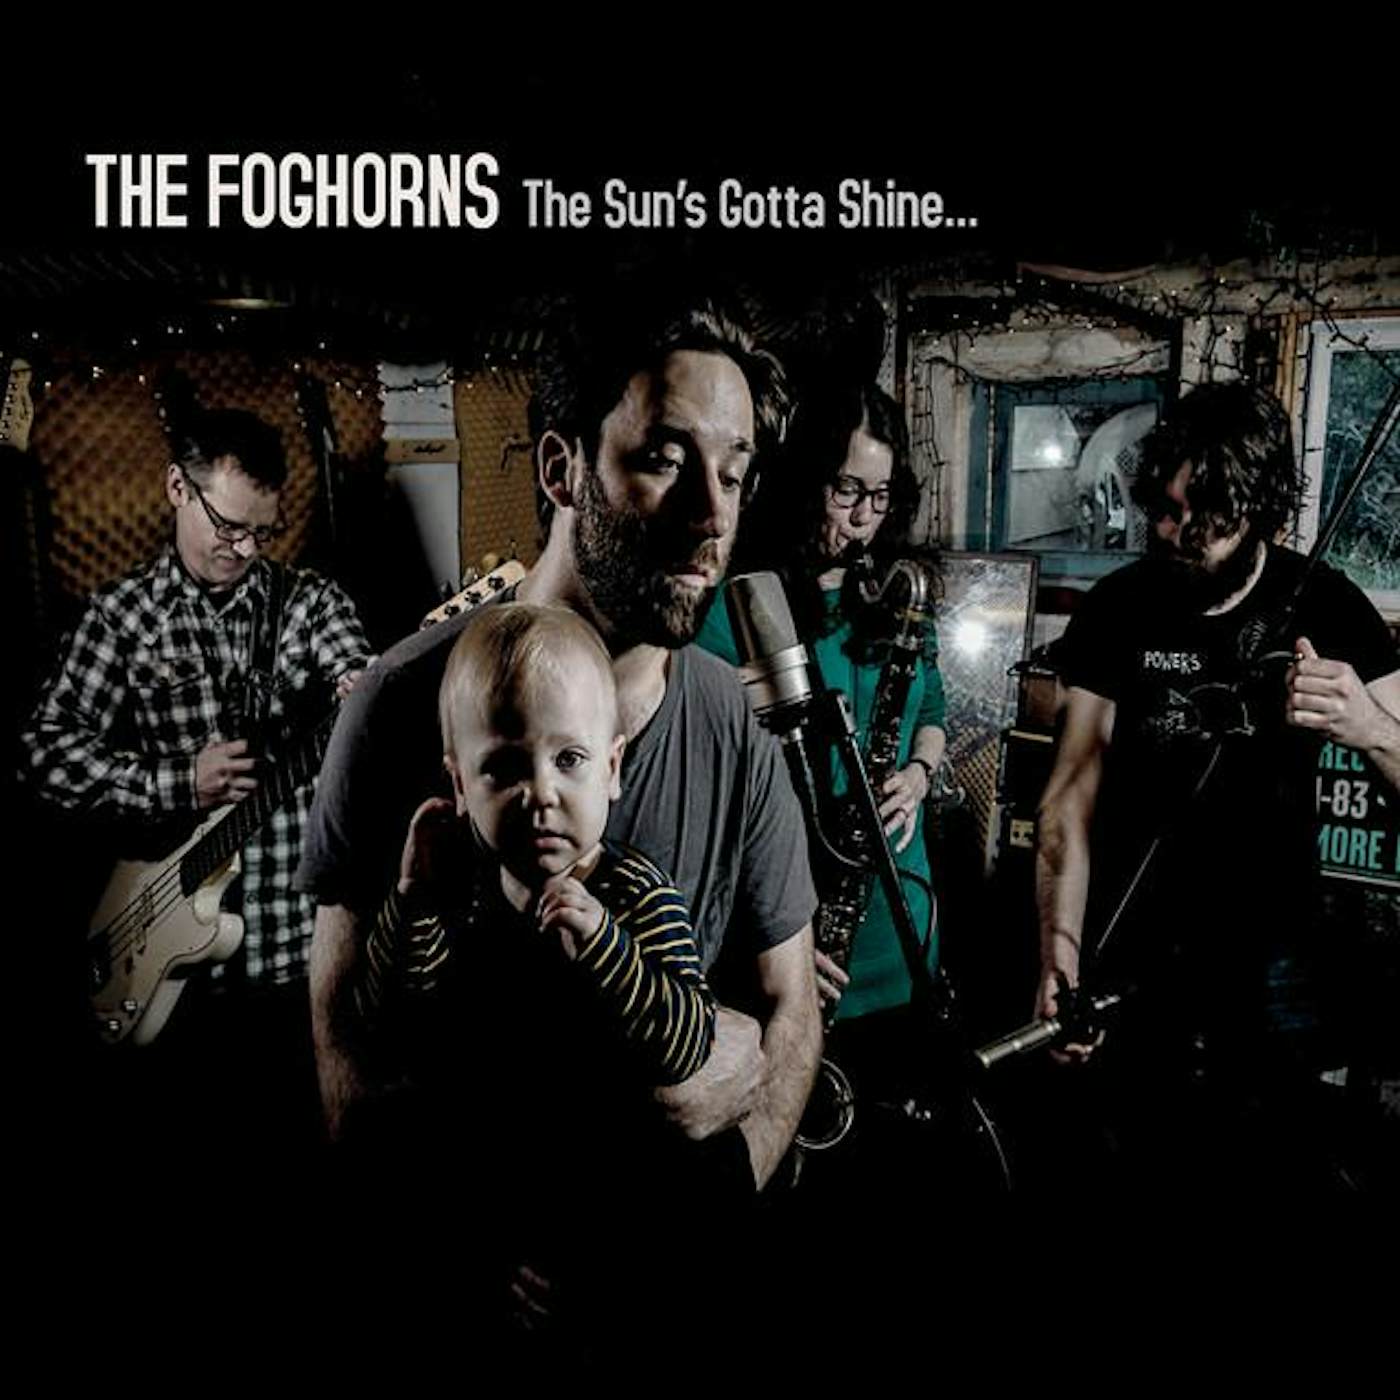 The Foghorns